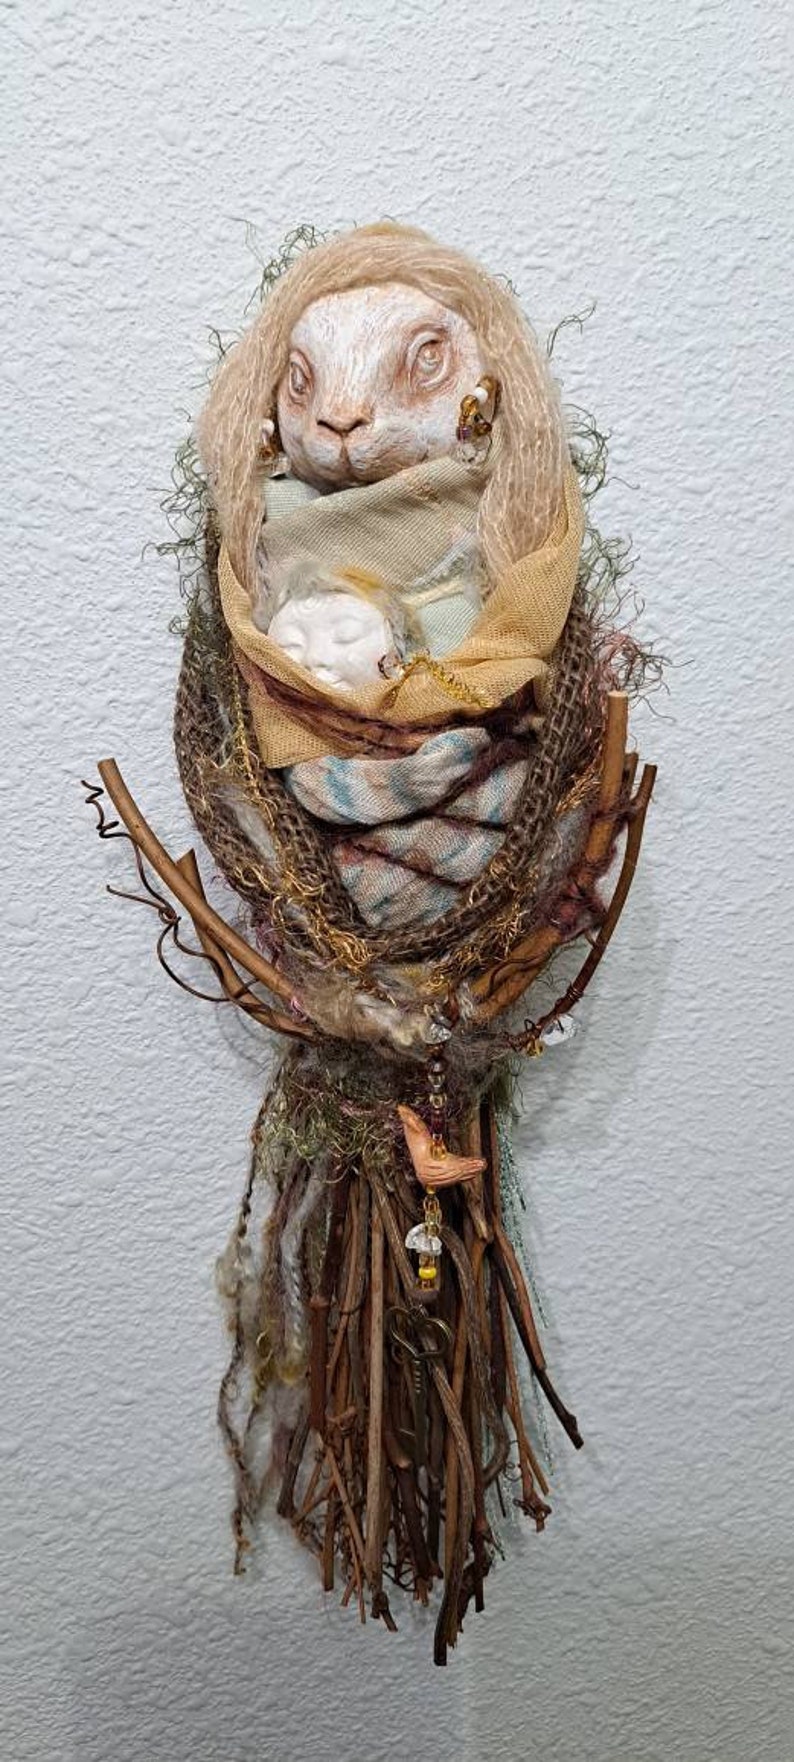 OOAK Art doll, Anthropomorphic Hare Spirit, Nature lover gift image 8